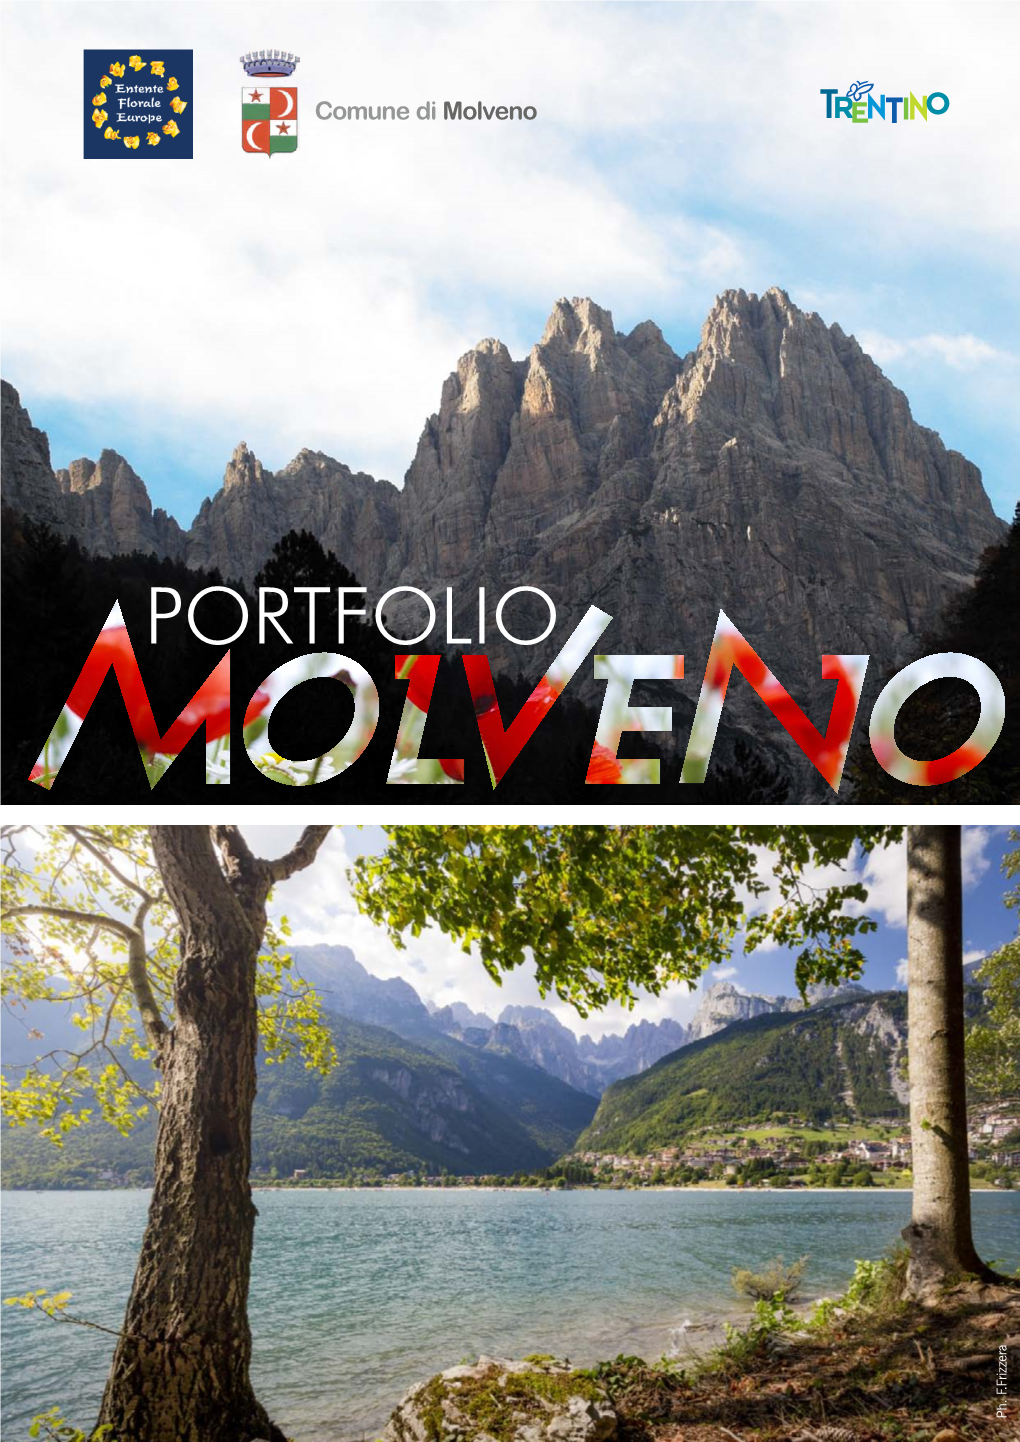 Portfolio of Molveno